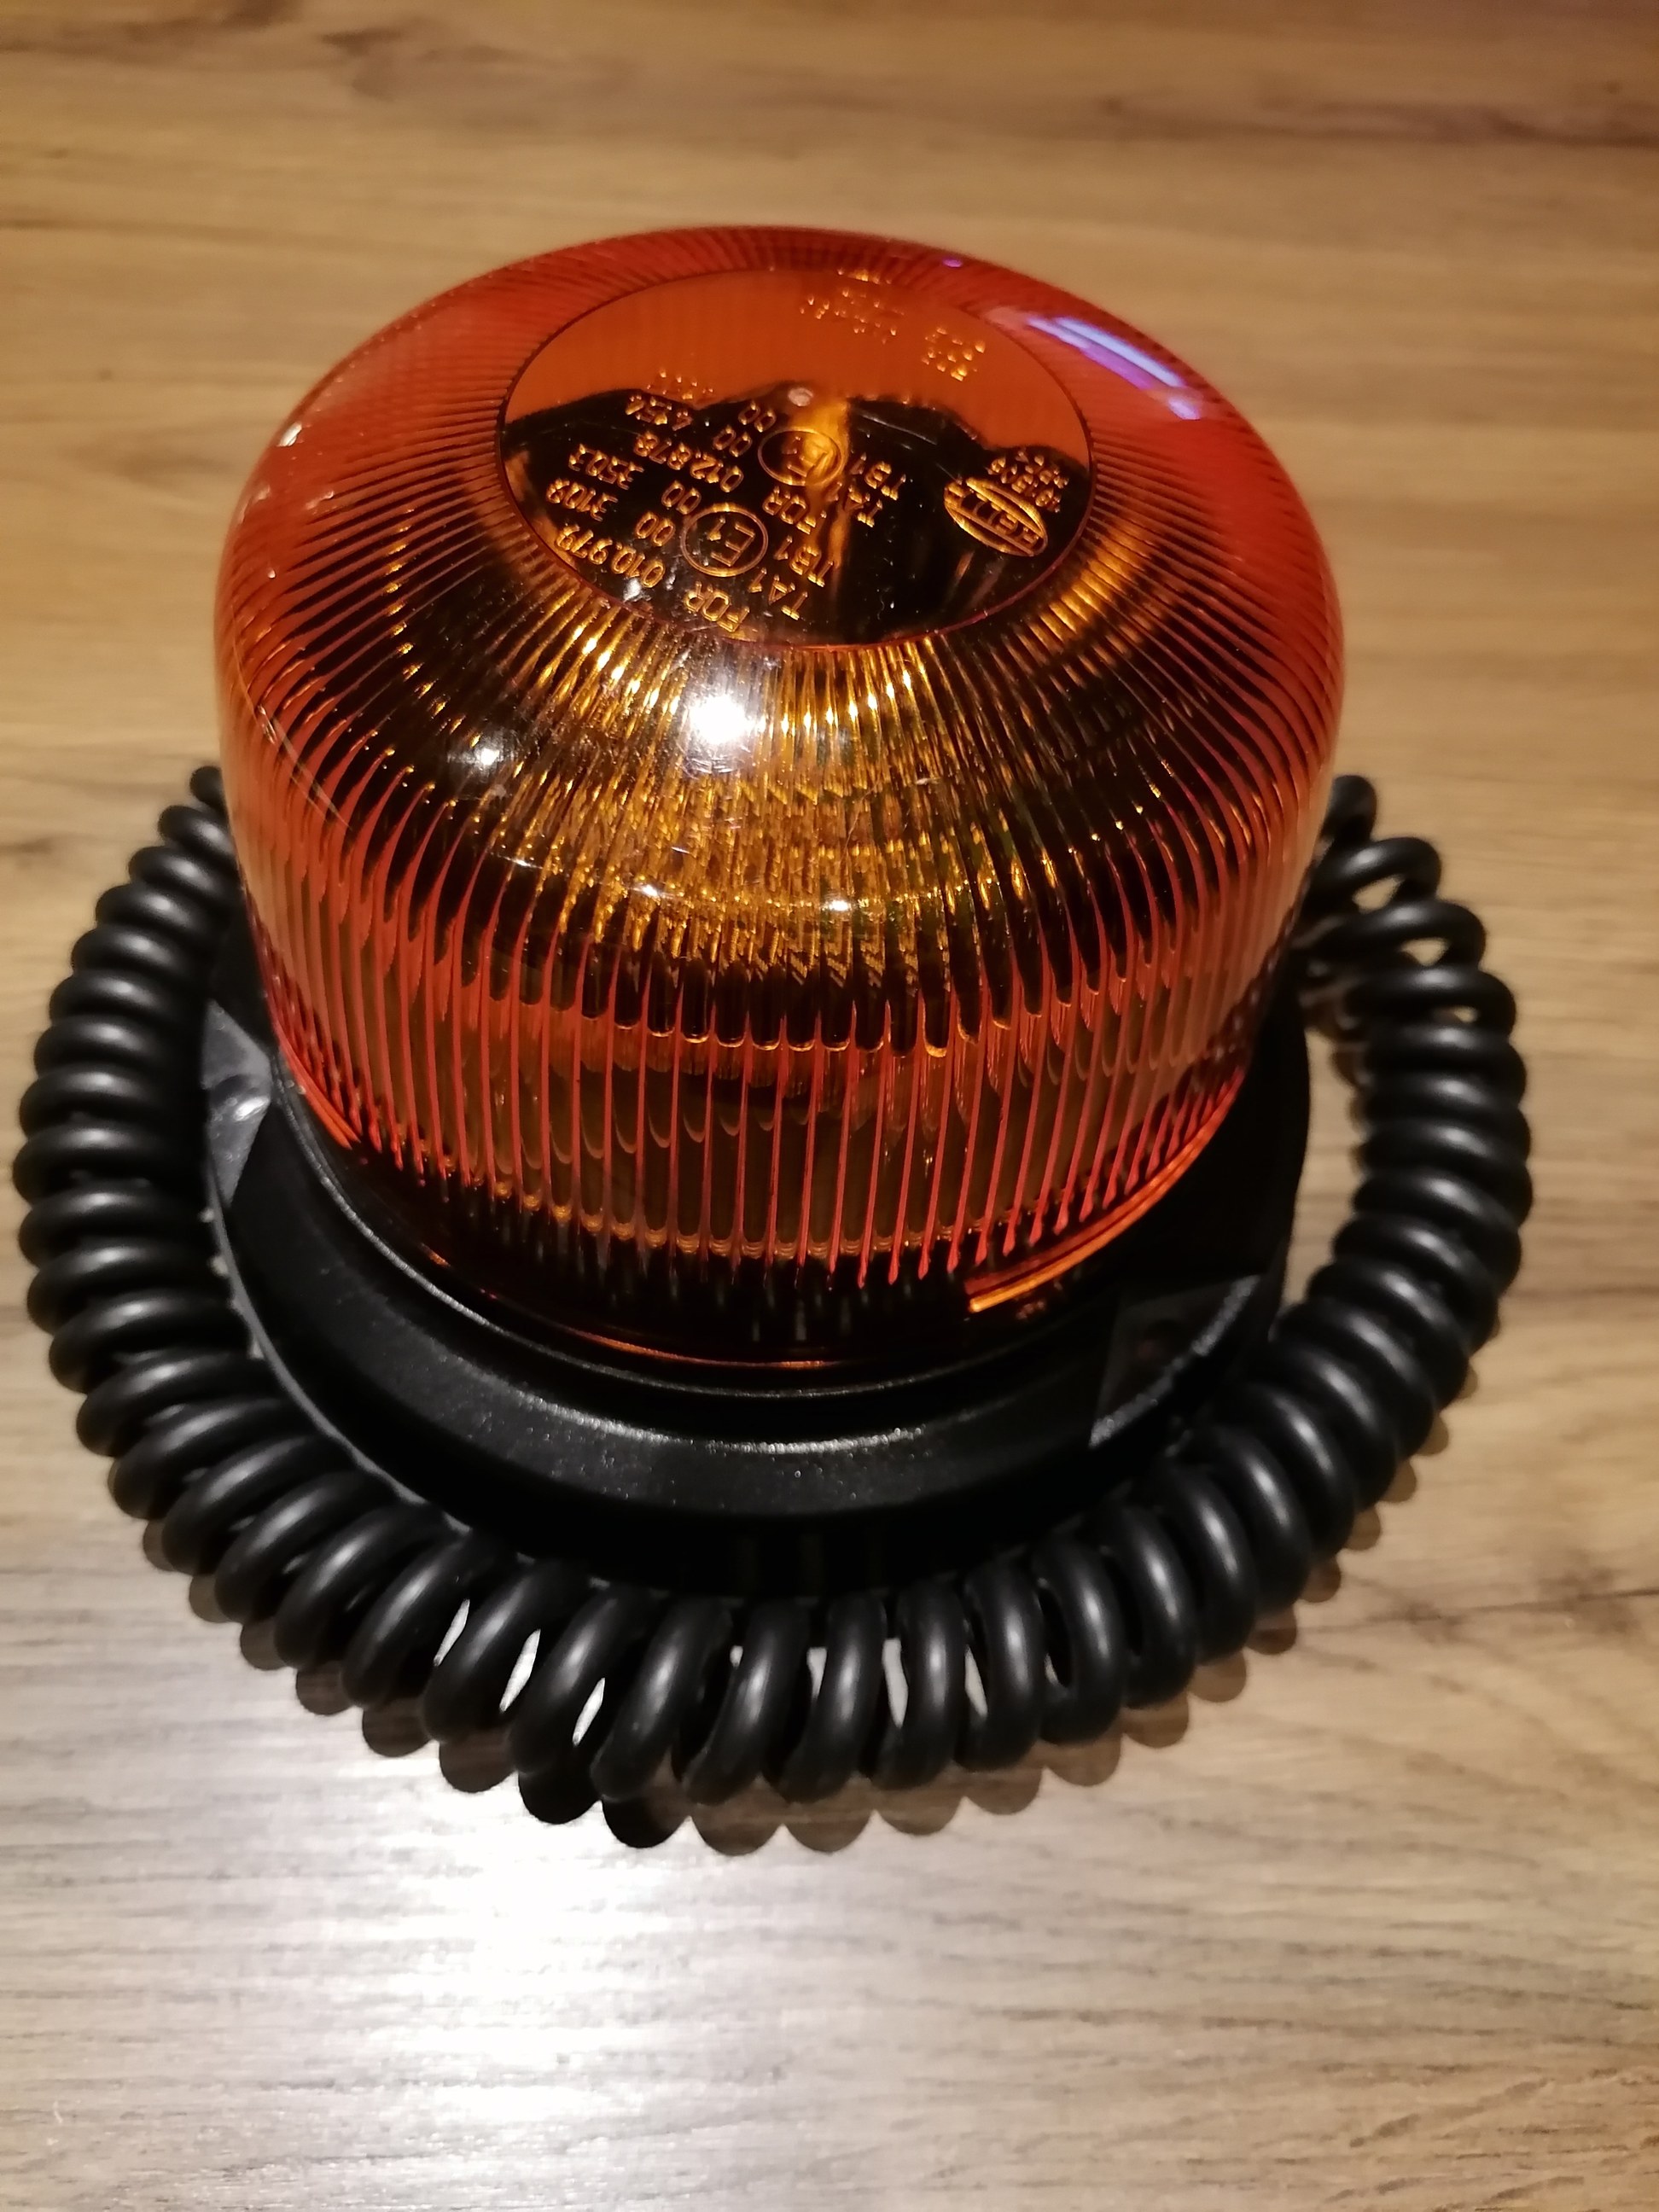 Gyrophare GYROLED - 8 LEDs - Orange - Magnétique PAC